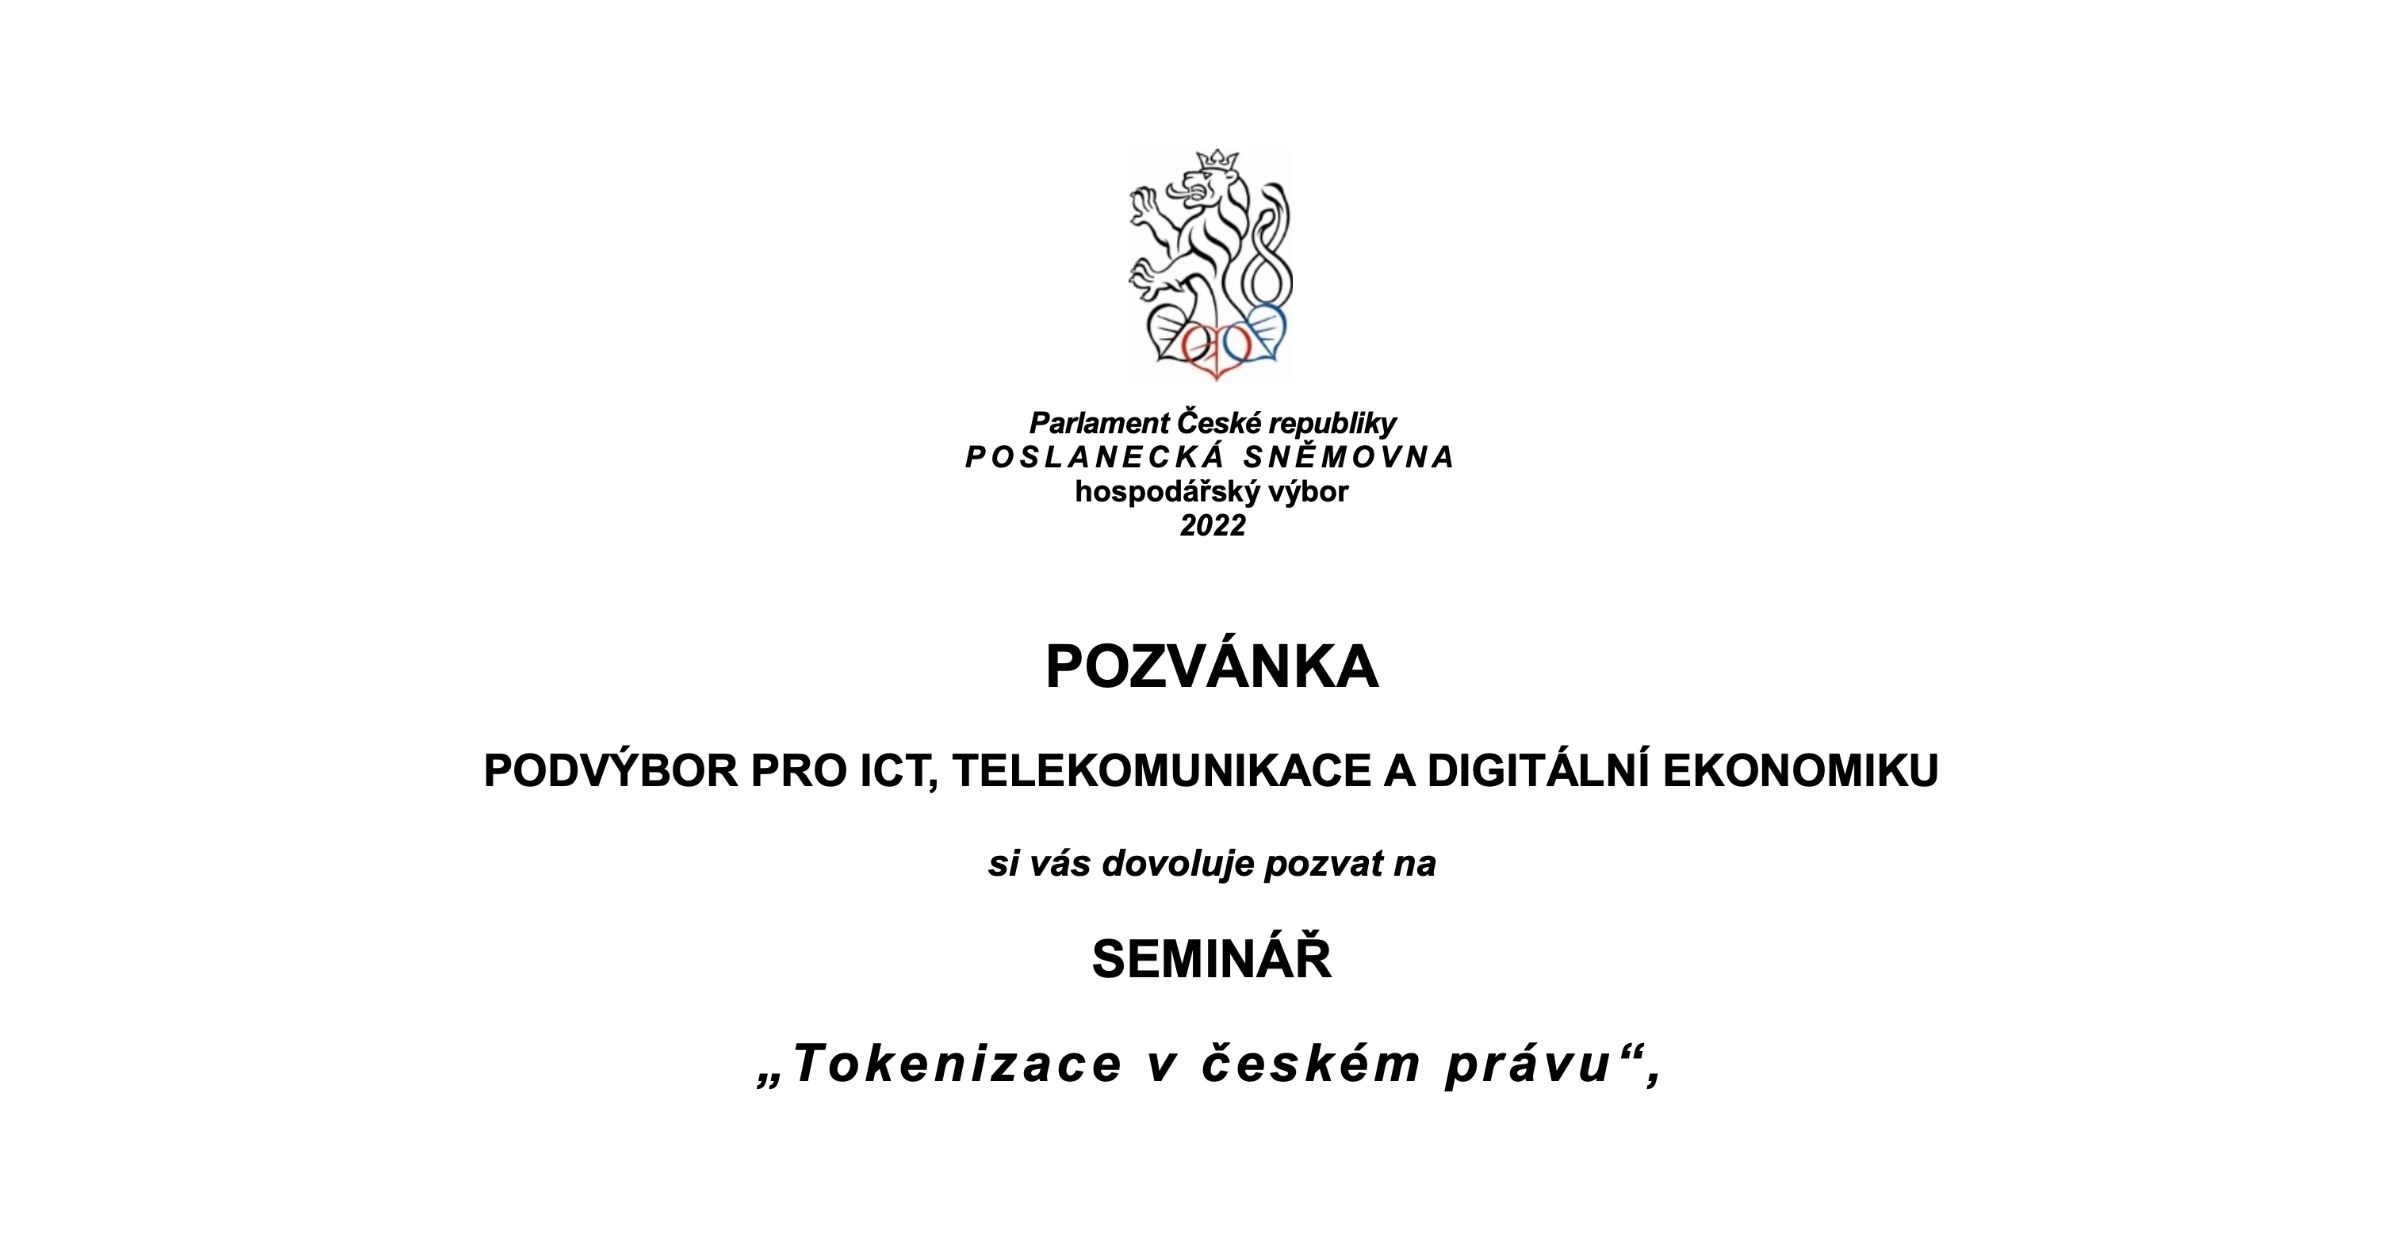 Pozvánka na seminář - Tokenizace v českém právu